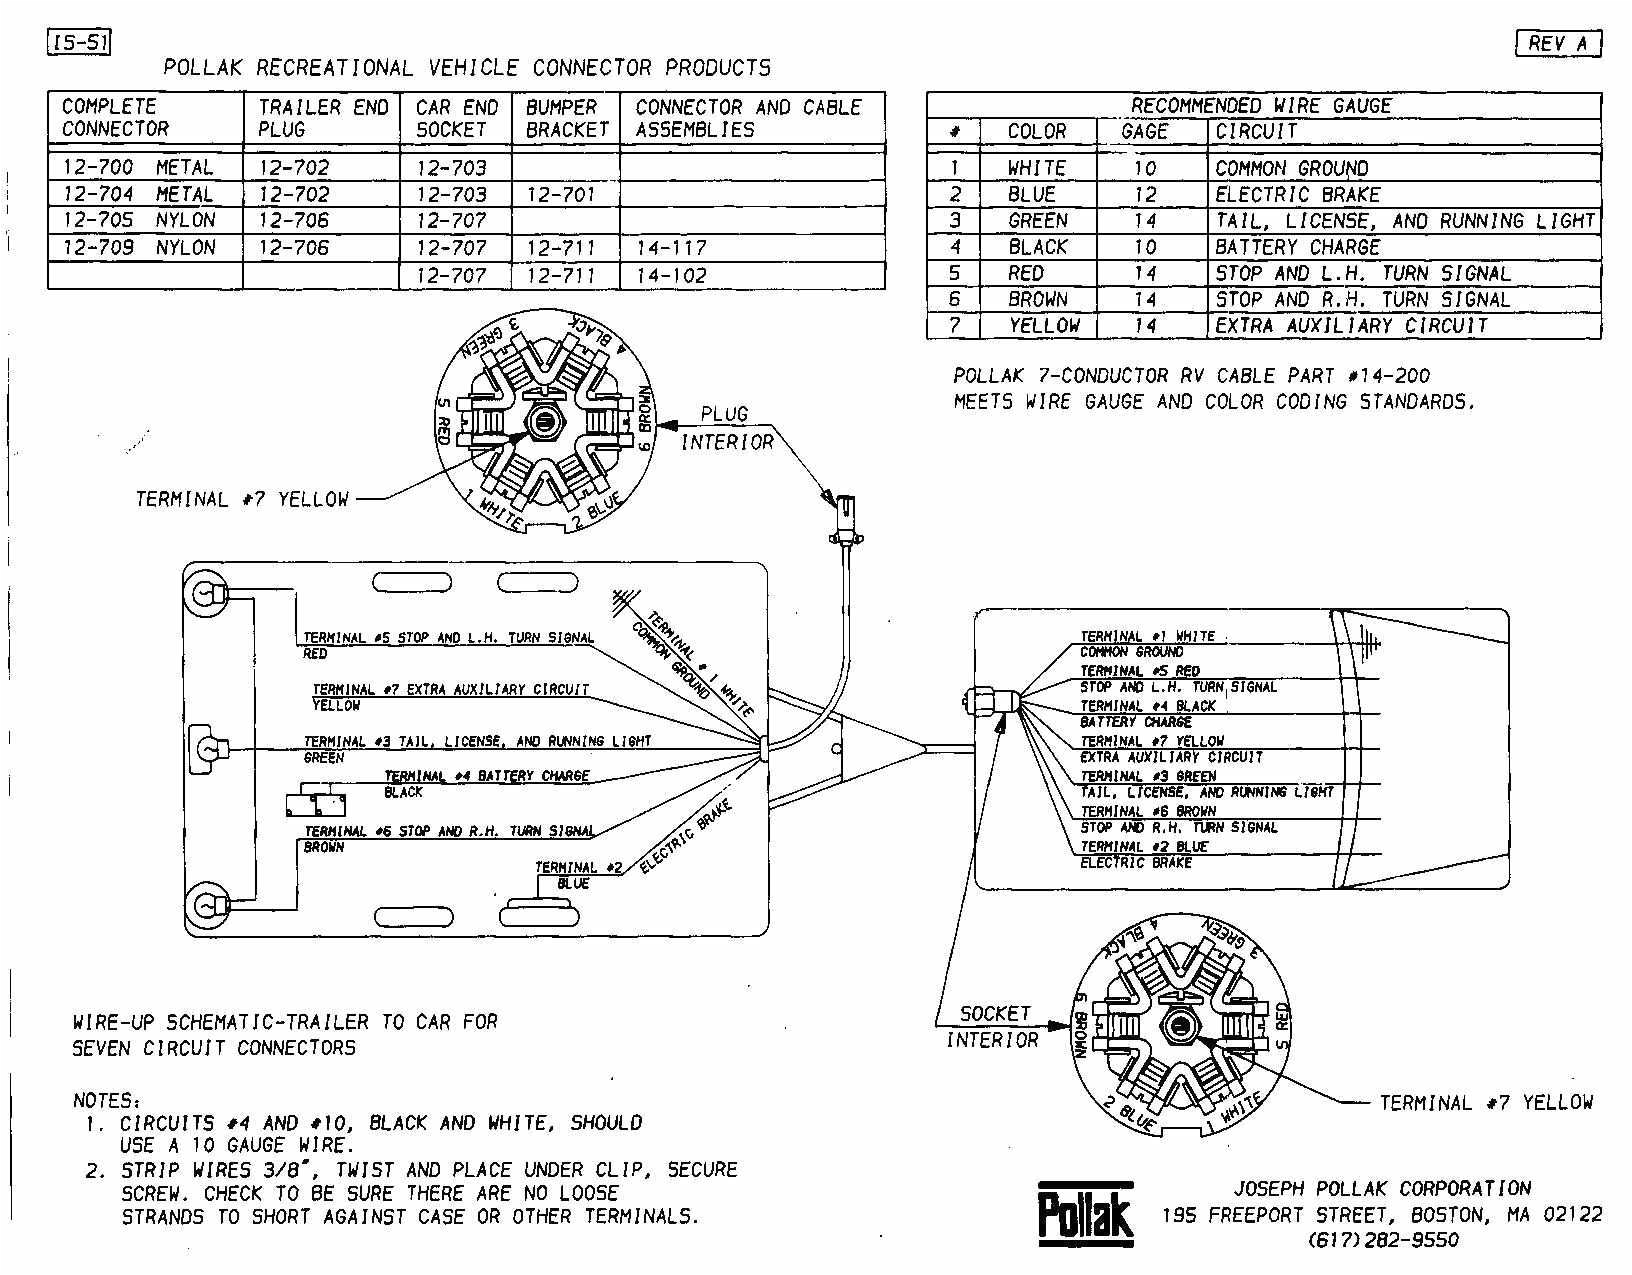 wiring diagram pollak 1923 wiring diagram operationspollak solenoid wiring diagram wiring diagrams bib wiring diagram pollak